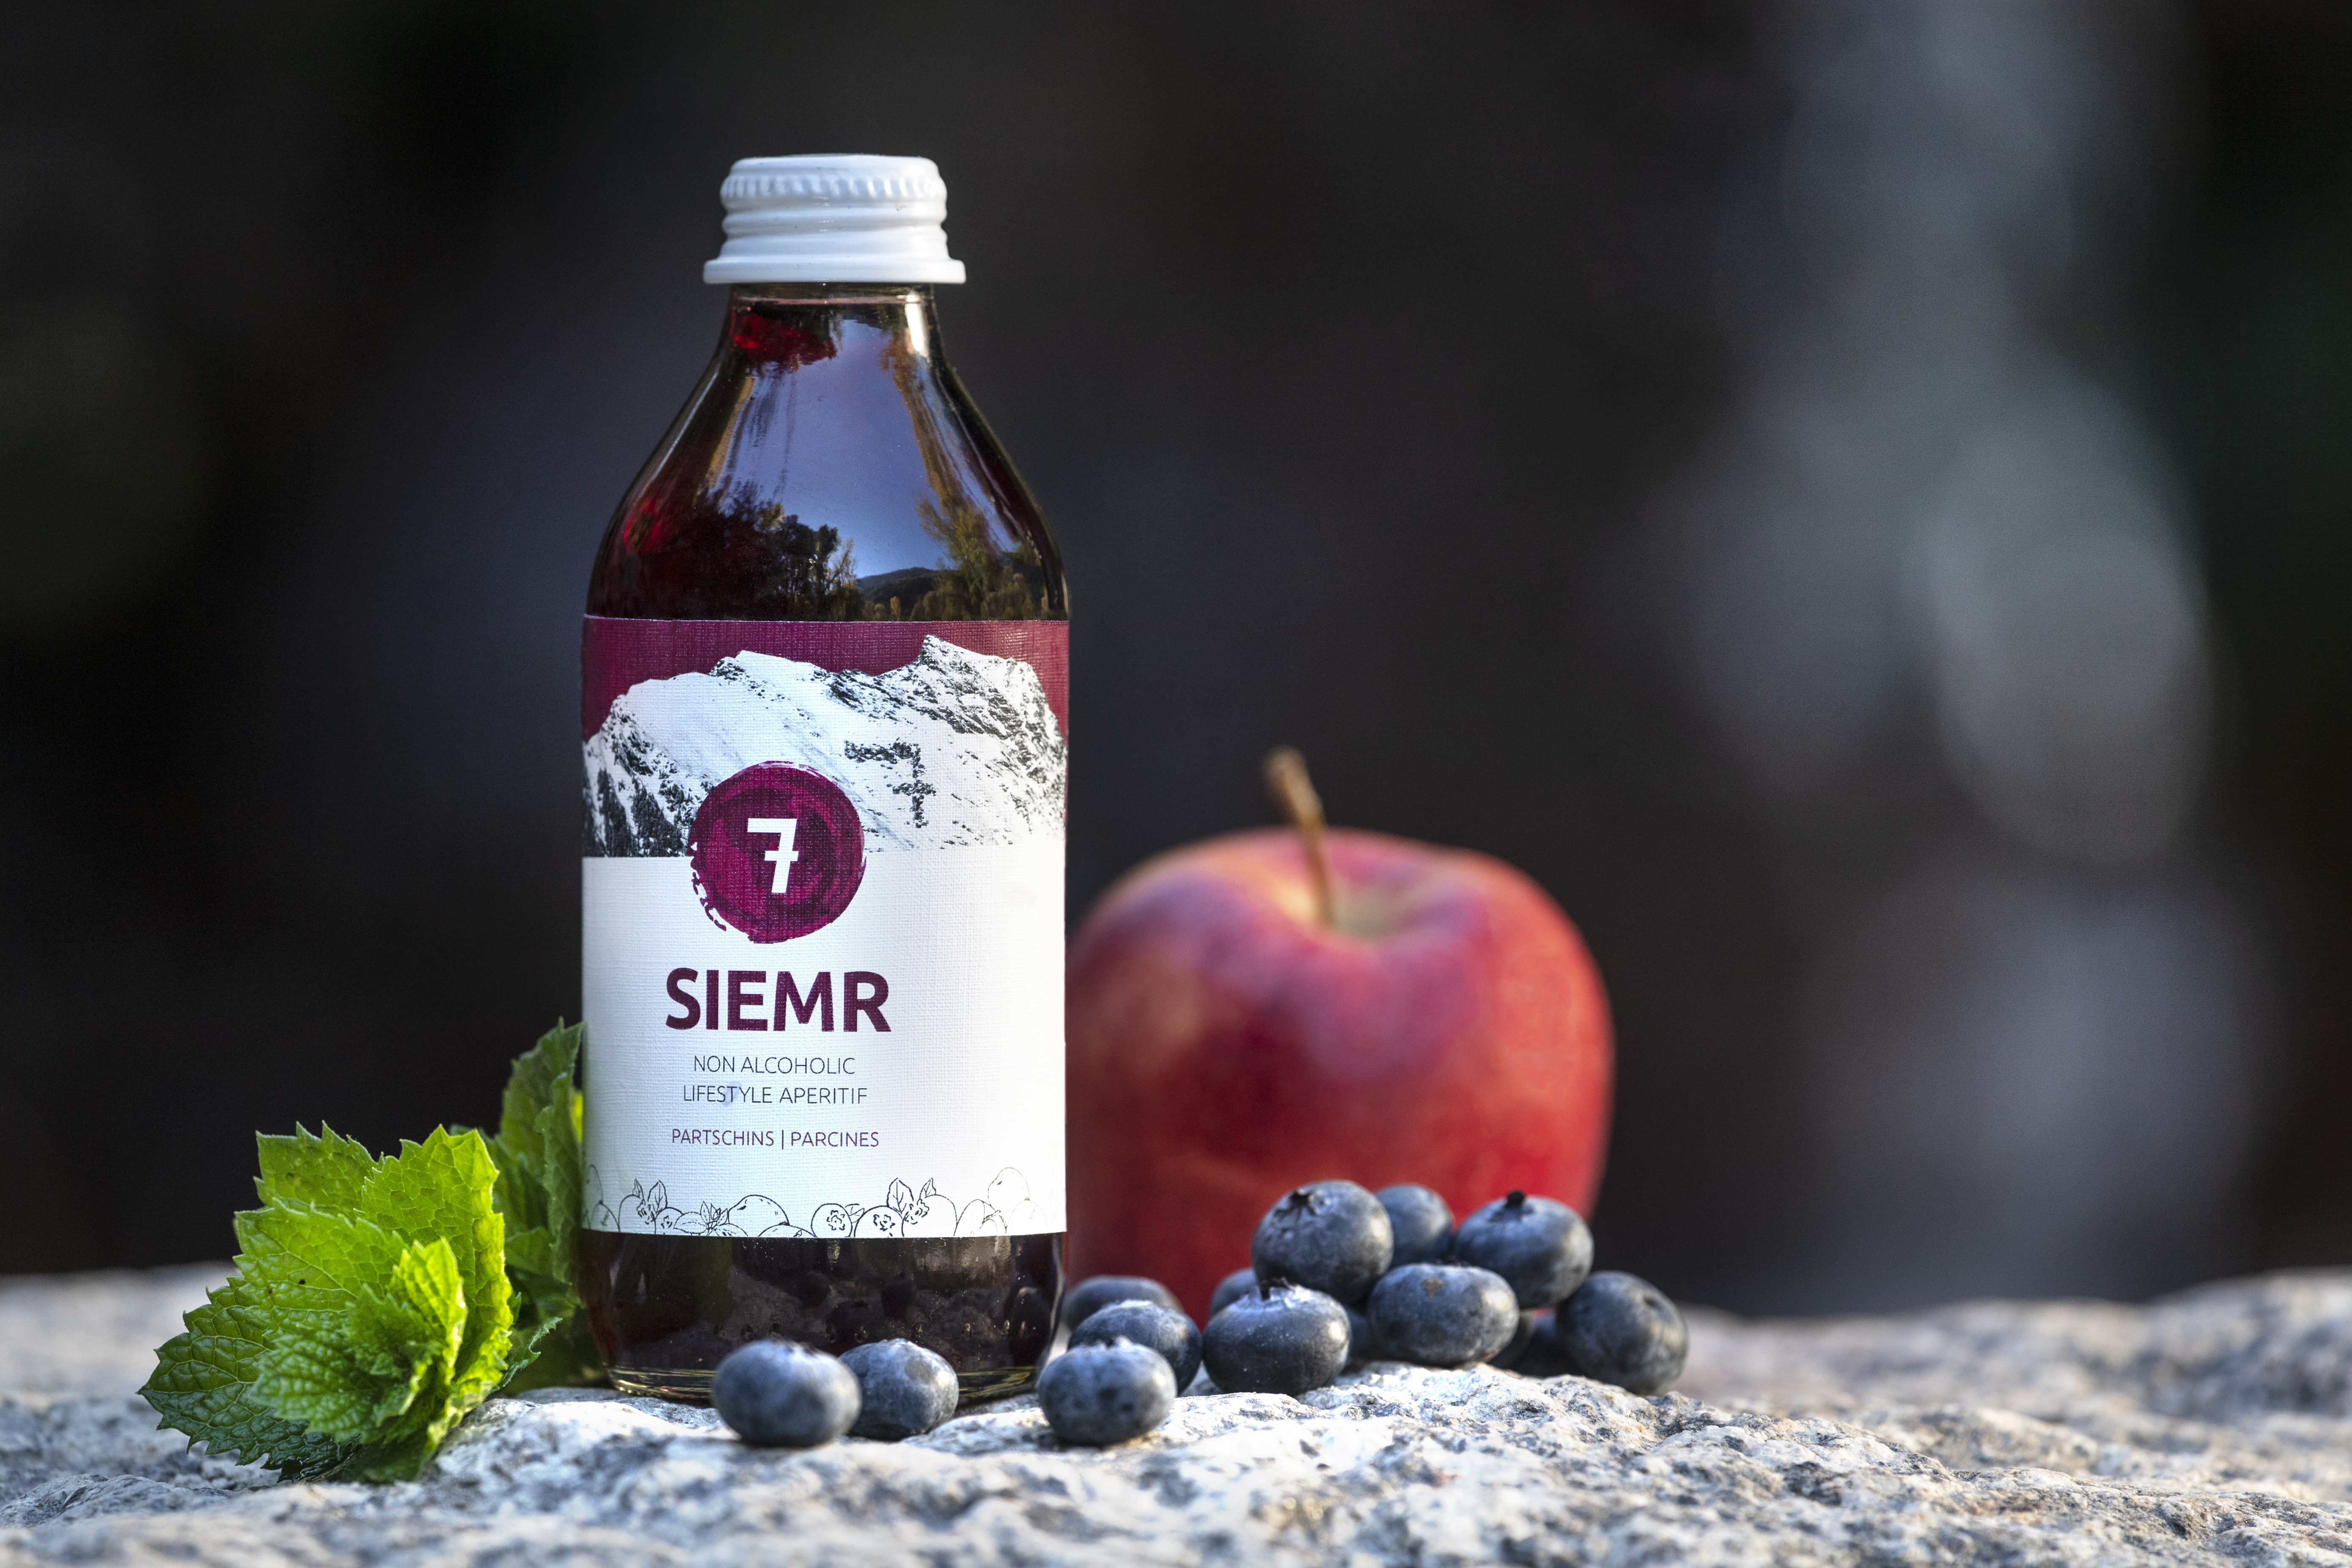 7 - Siemr - Erfrischungsgetränk aus Heidelbeere, Apfel und Minze